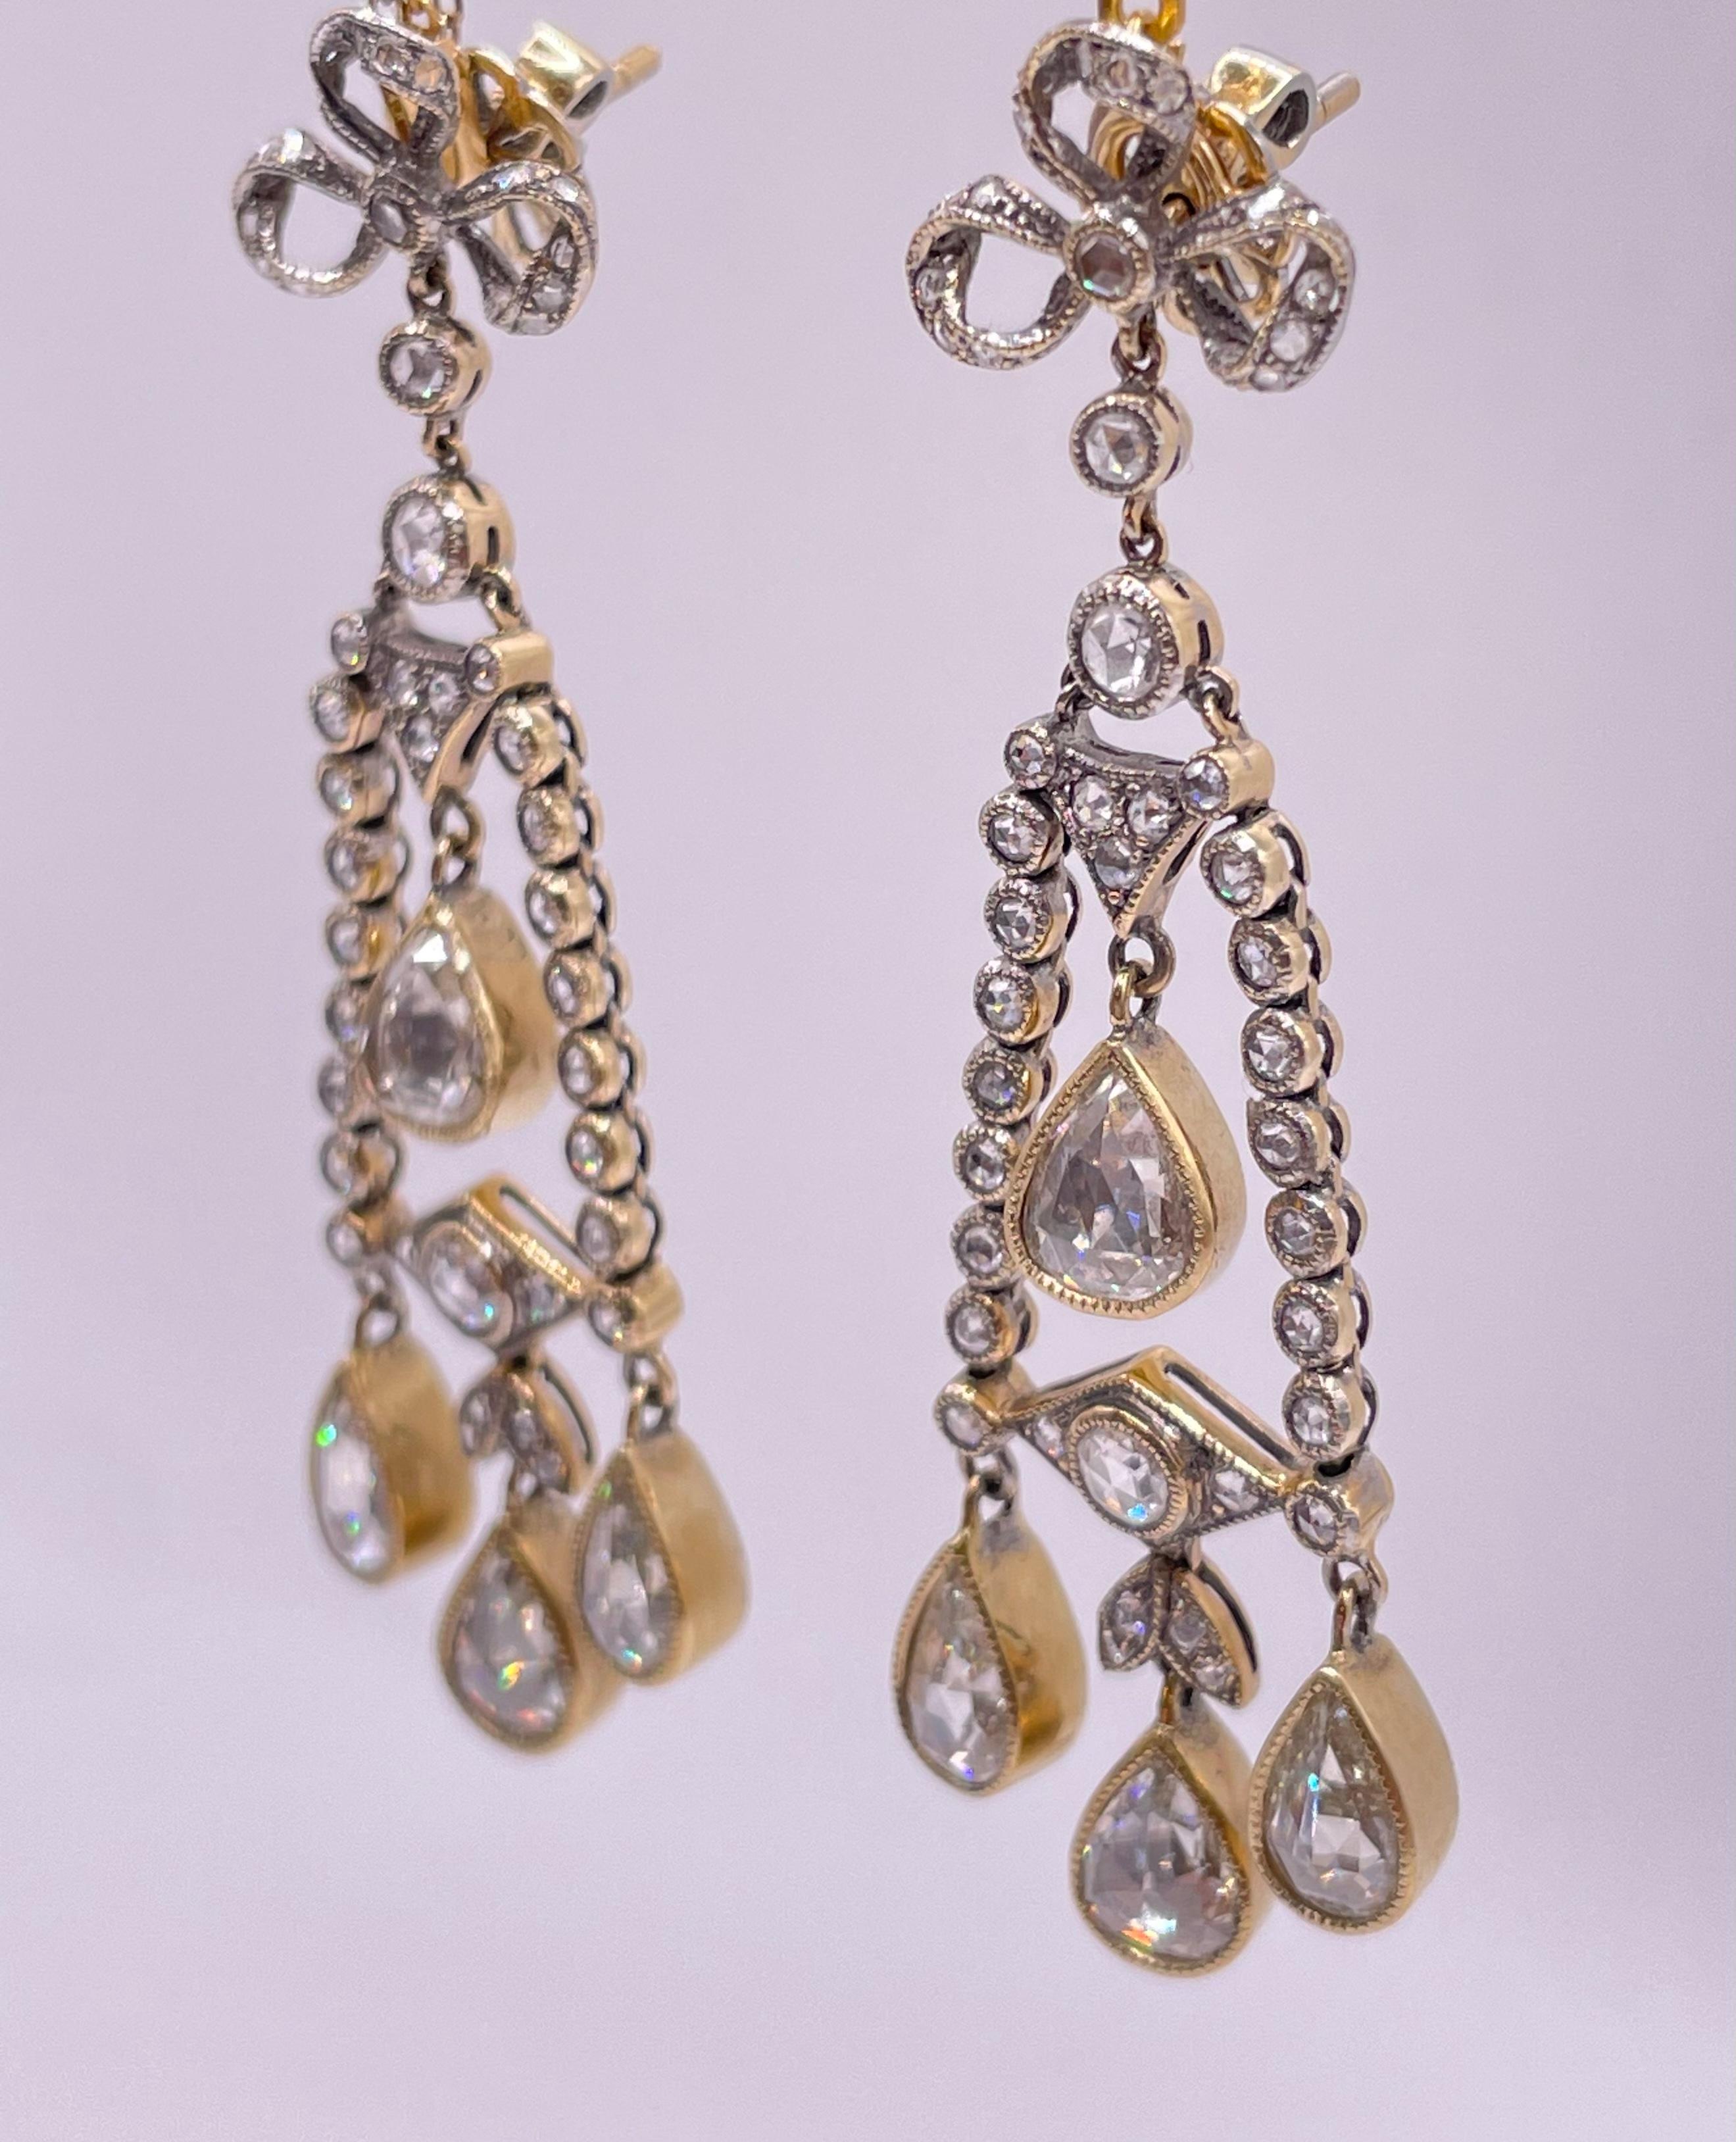 Superbe paire de boucles d'oreilles en diamants taillés en rose datant des années 1920 ( Artdeco ) .
Ces incroyables boucles d'oreilles sont fabriquées en or 14k et présentent un éventail étincelant de diamants taillés en rose. Environ 5,00 carats,